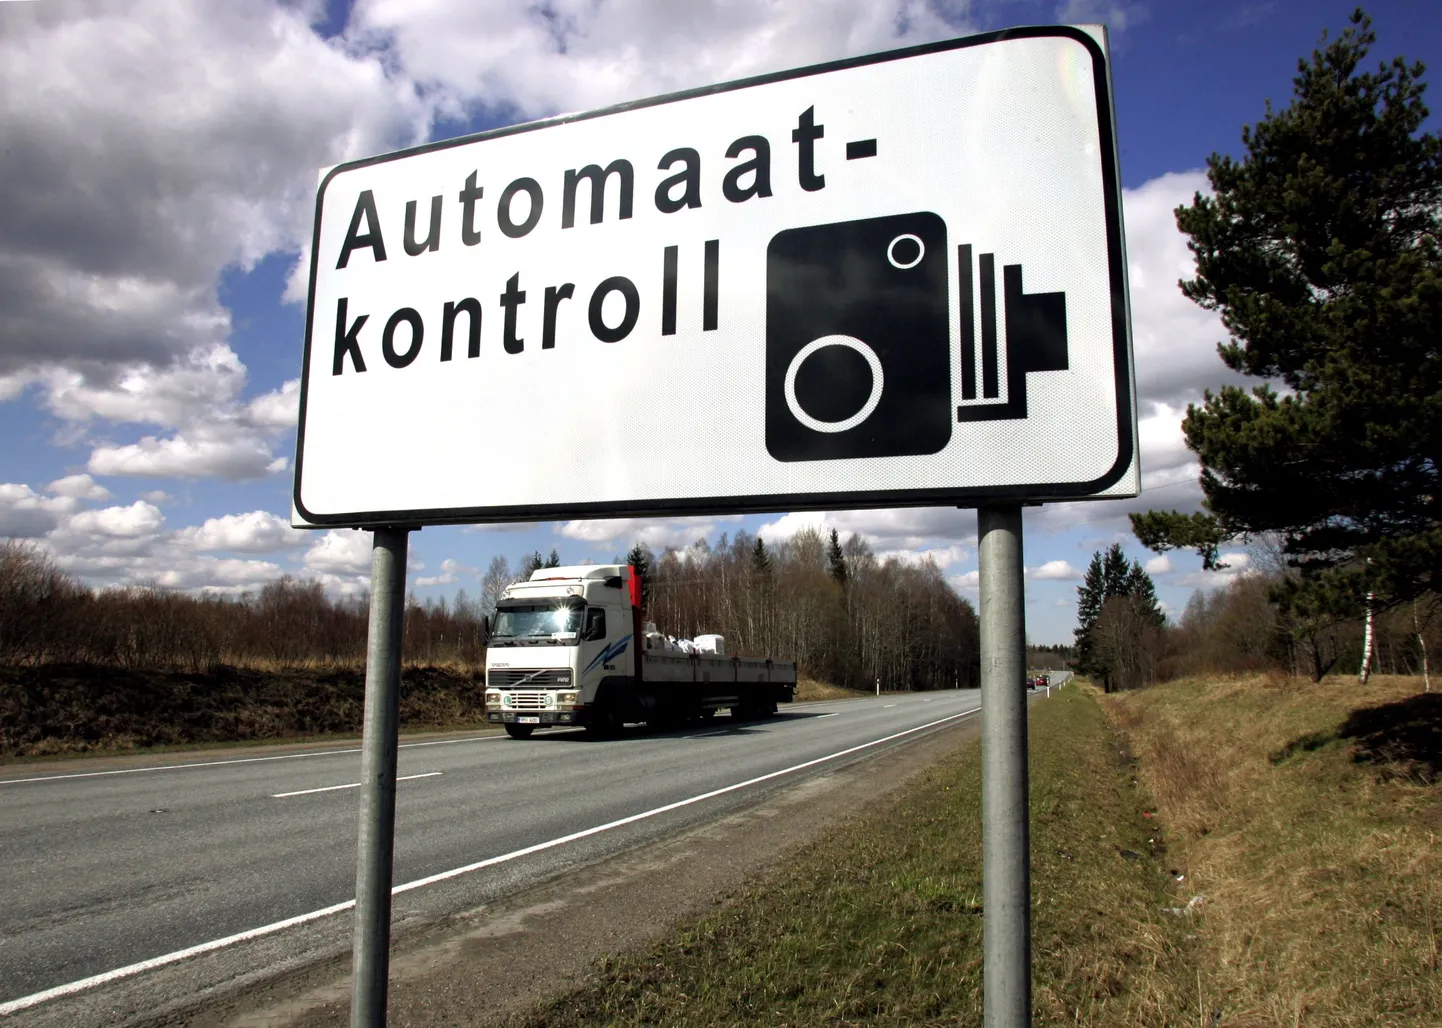 Дорожный знак, уведомляющий об автоматическом контроле.